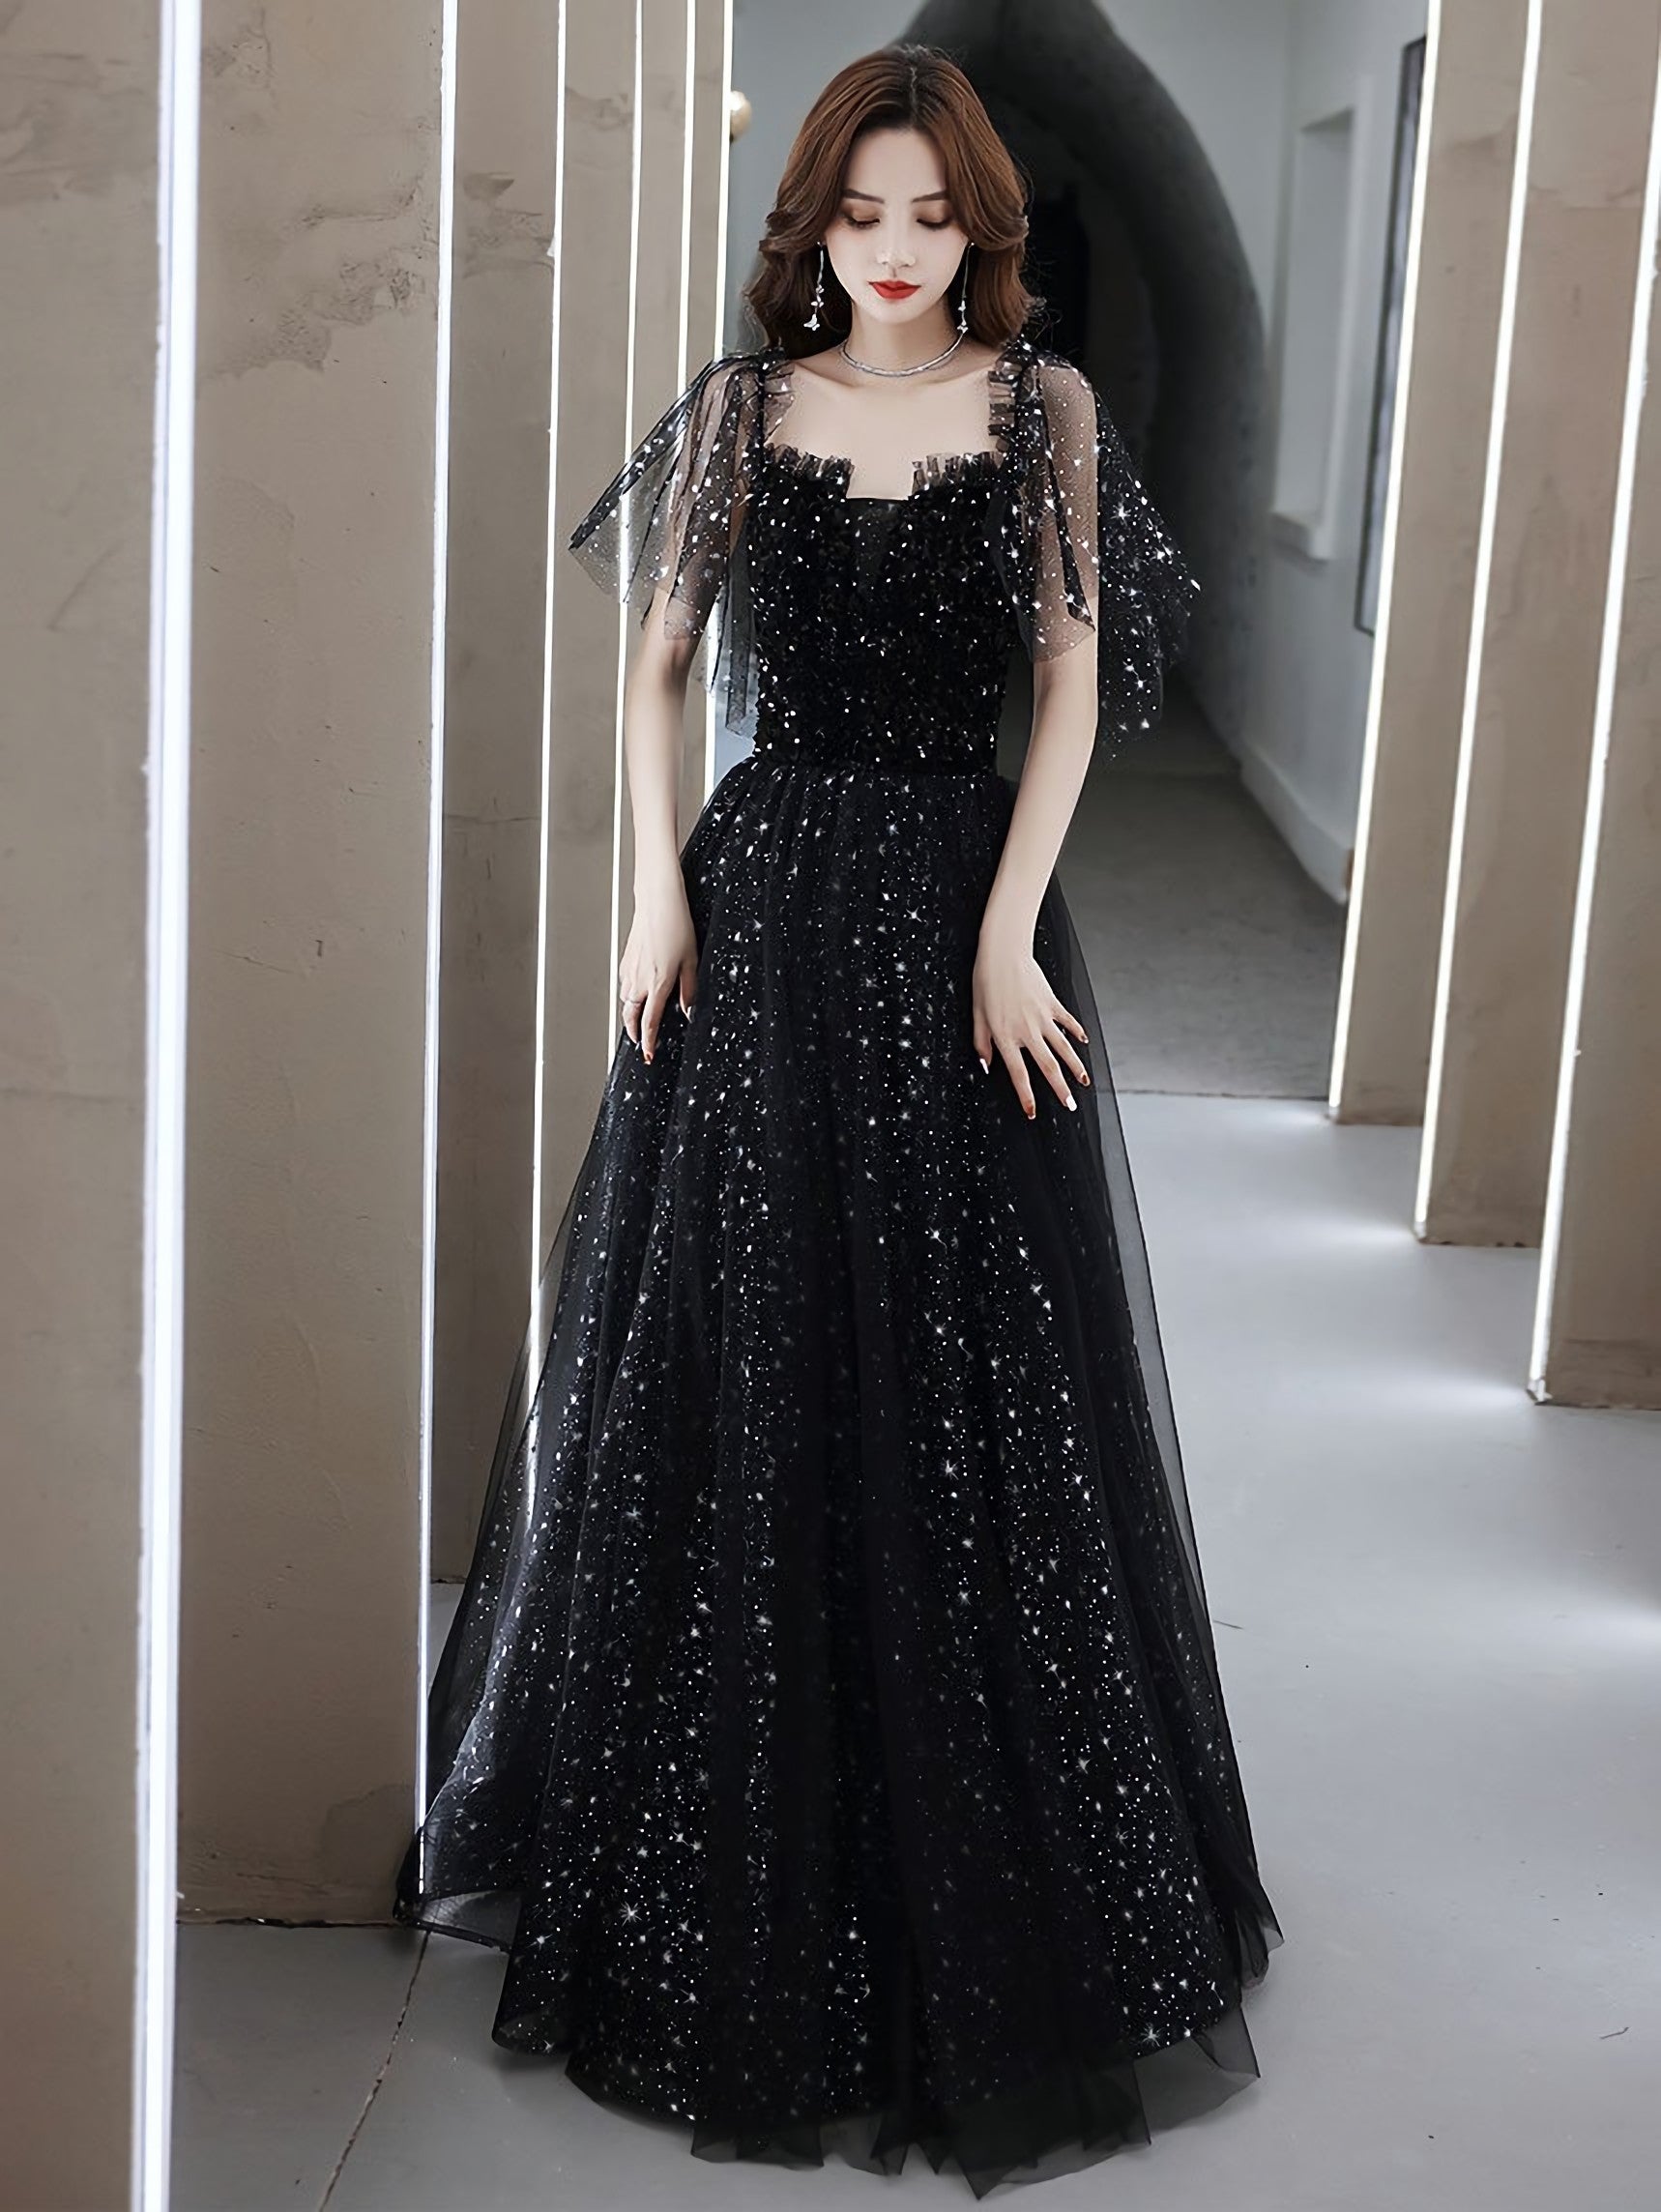 Black Tulle Off Shoulder Tulle Long Corset Prom Dress, Black Evening Dress outfit, Short Black Dress